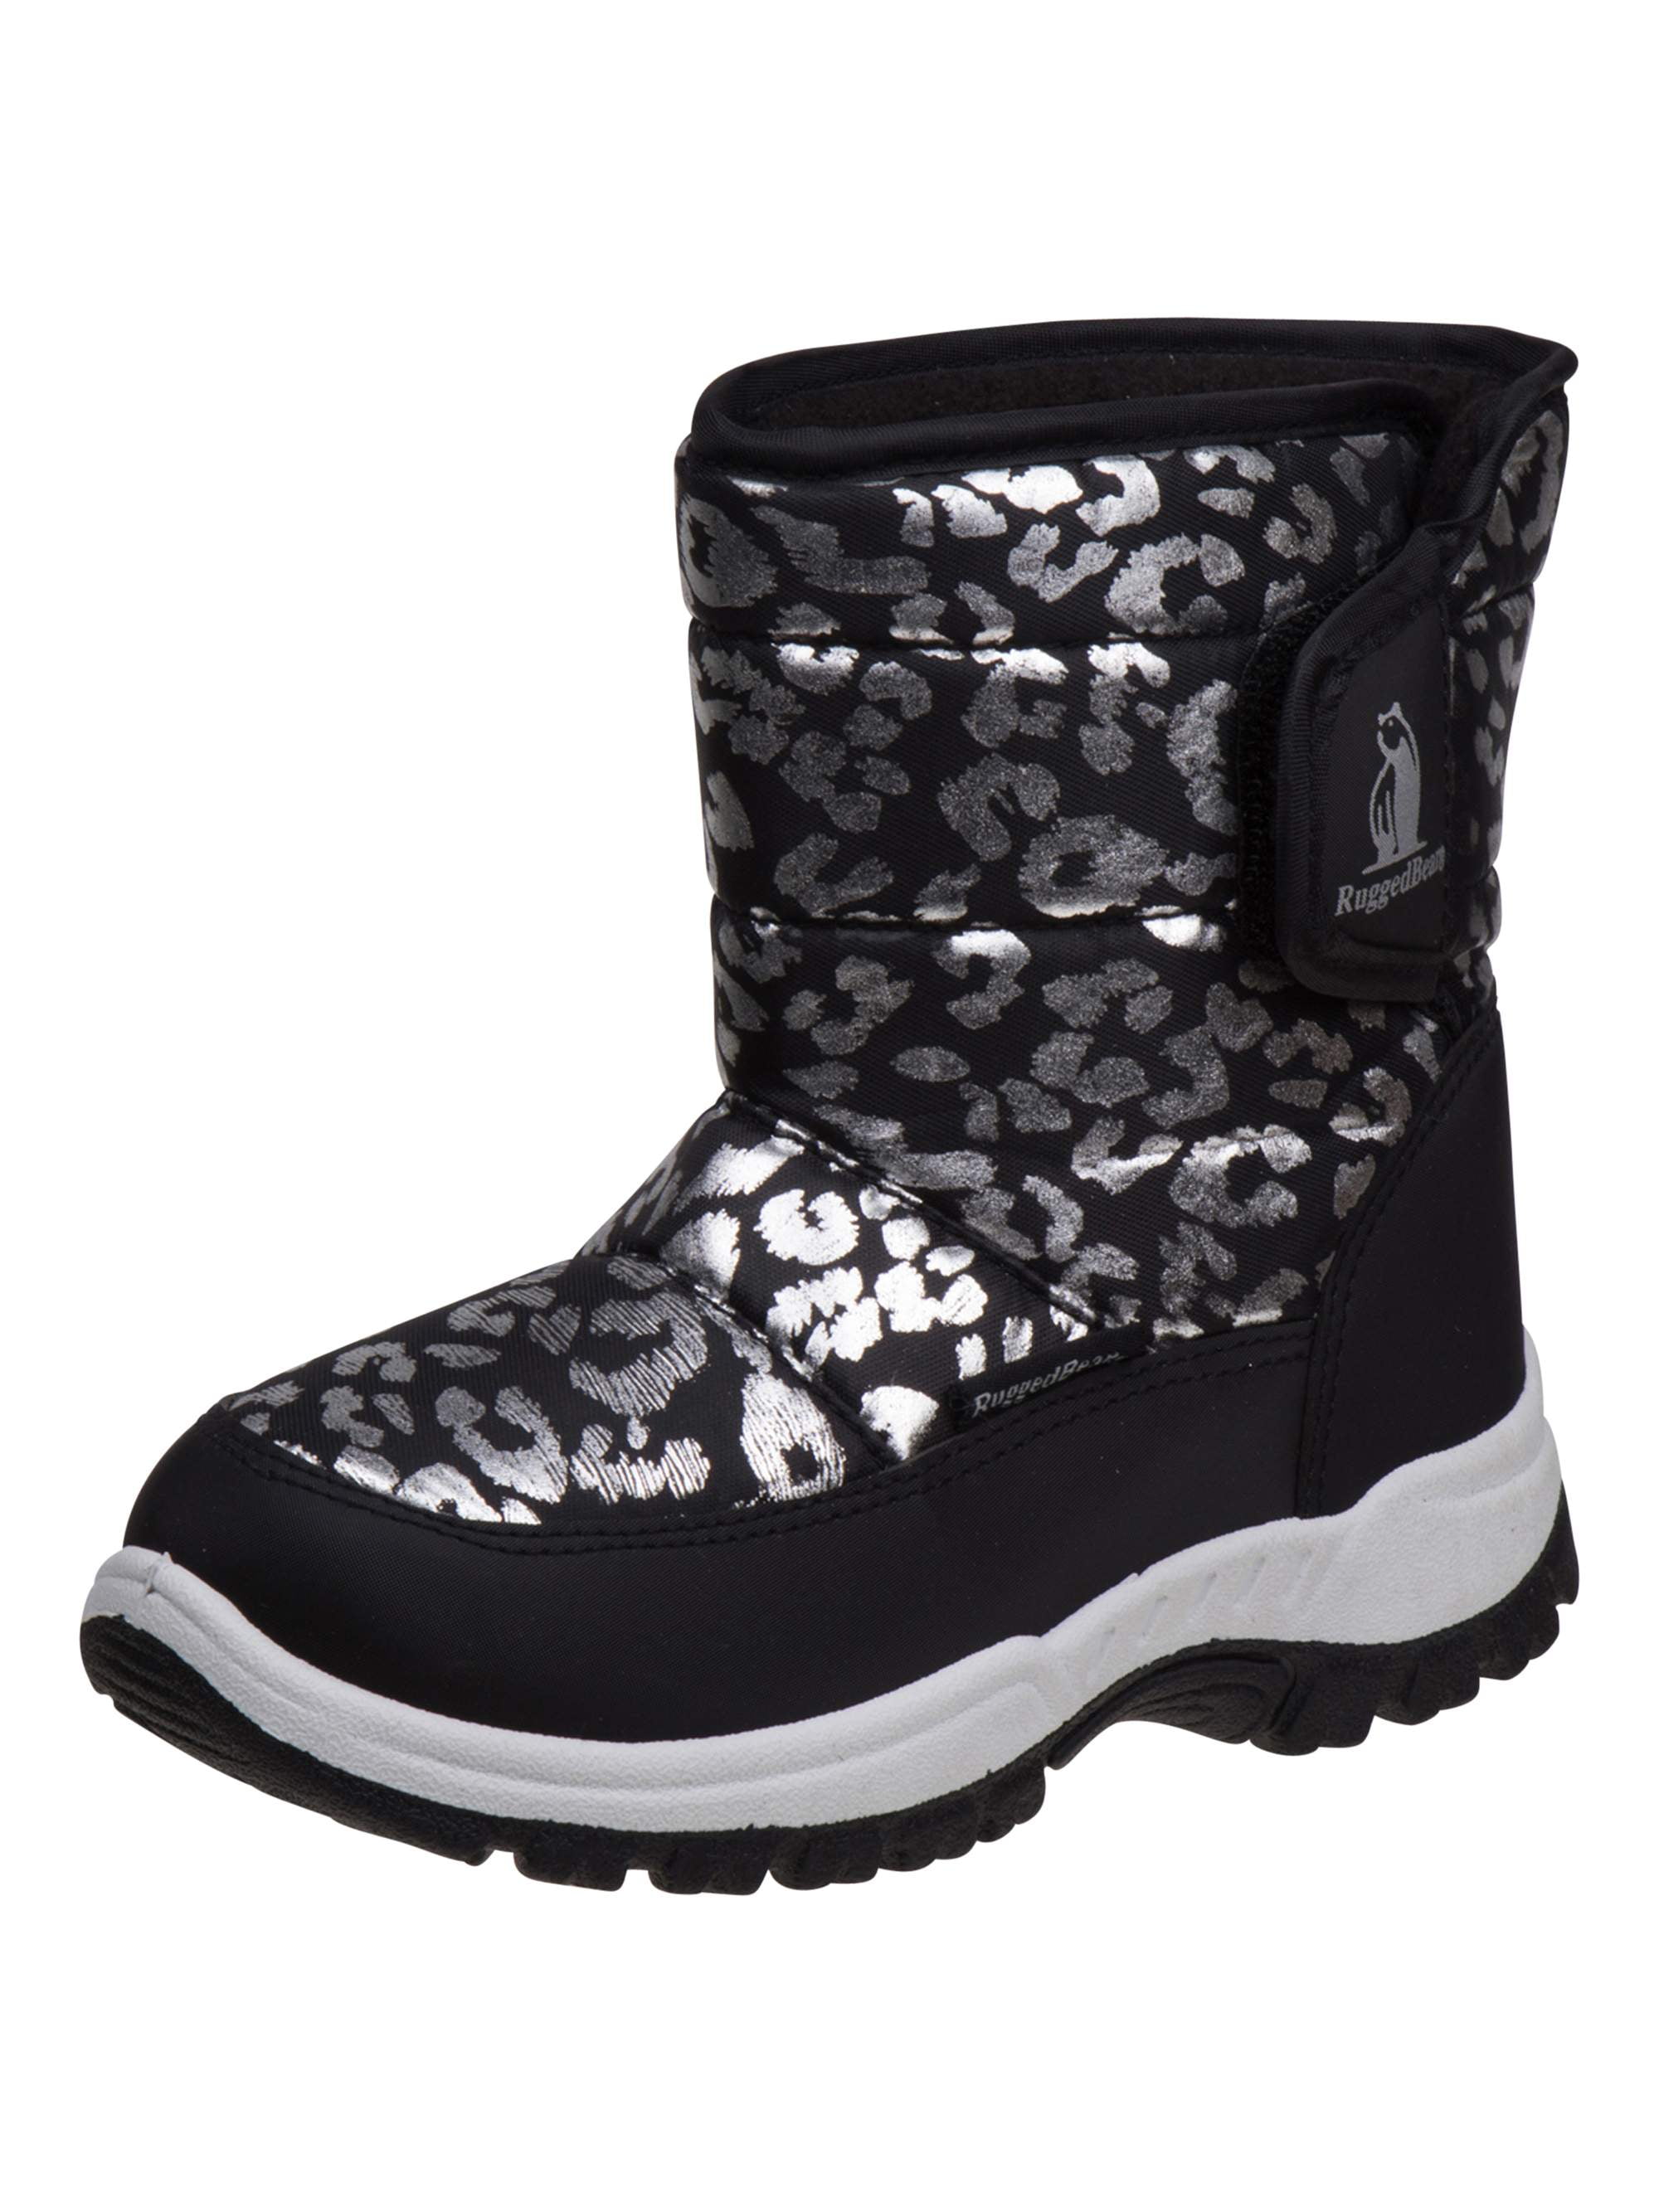 cheetah print snow boots